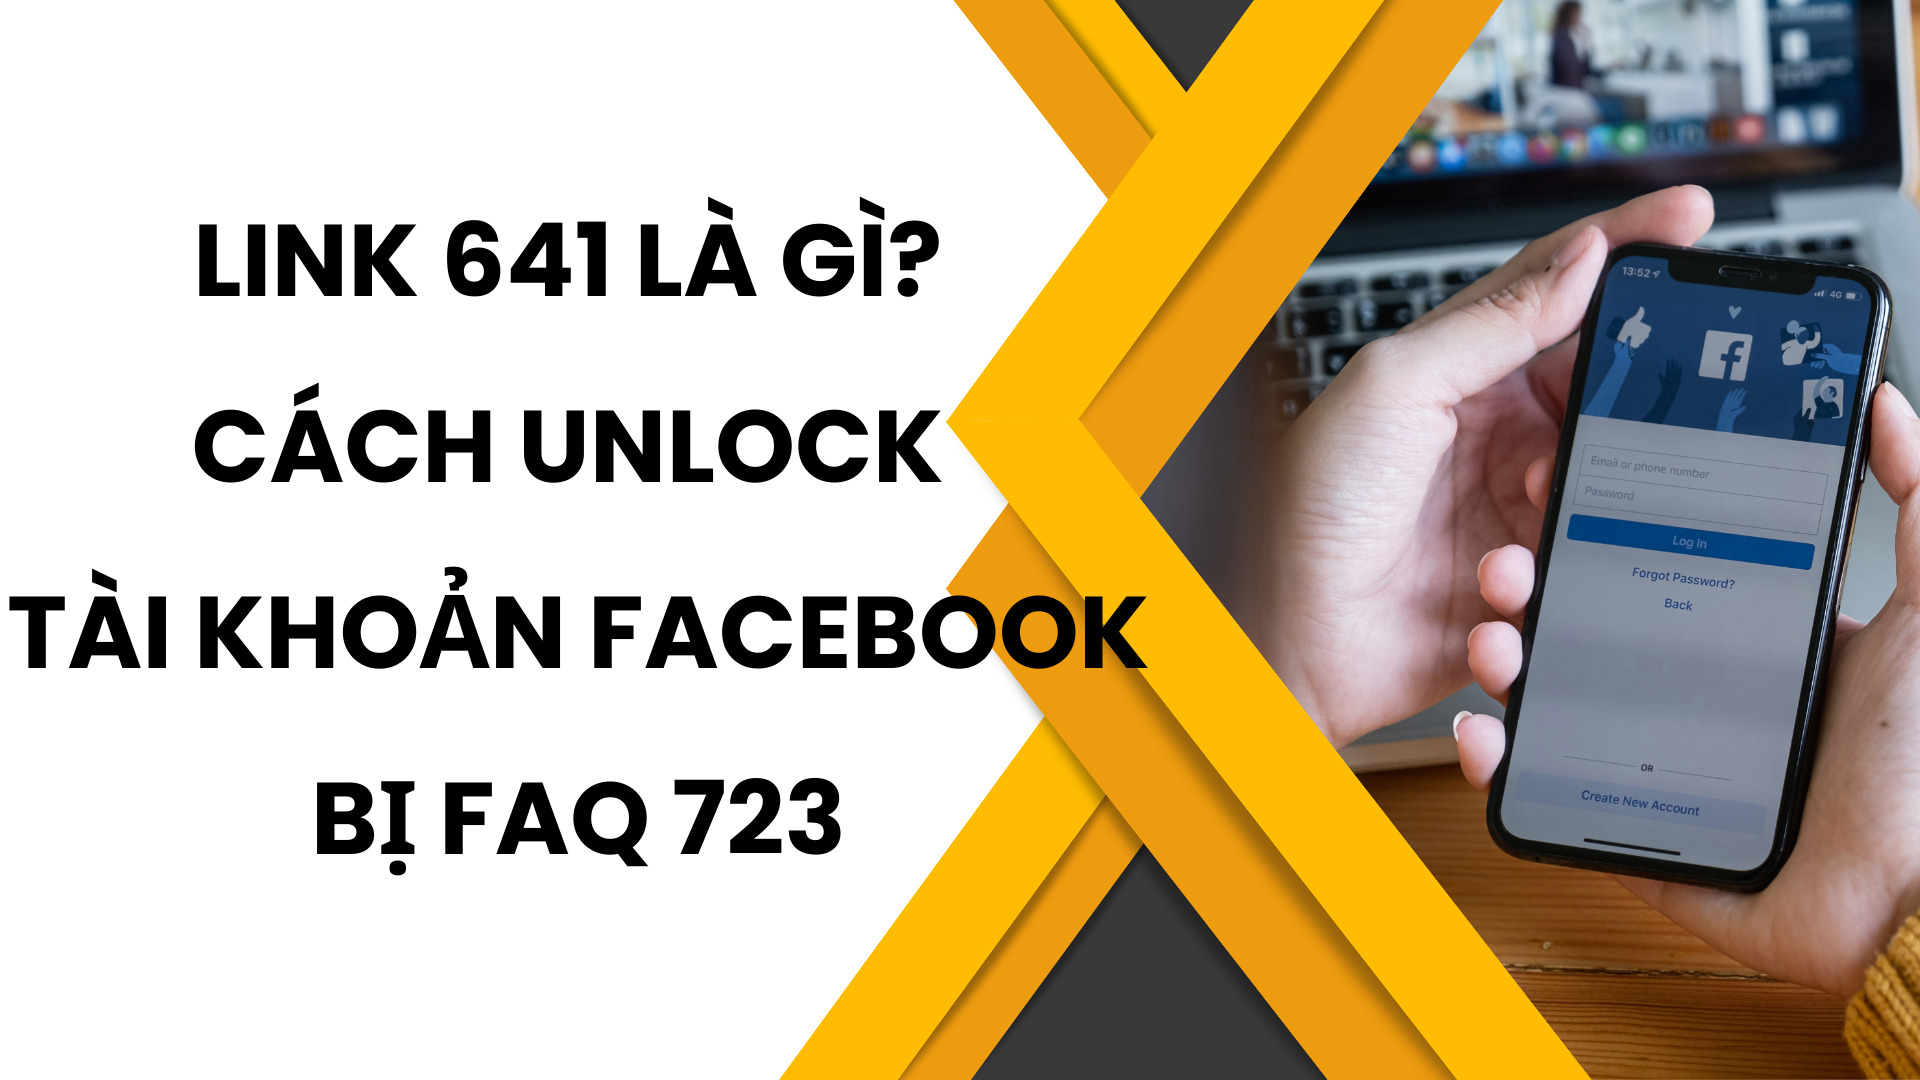 Link 641 là gì? Cách unlock tài khoản Facebook bị FAQ 723